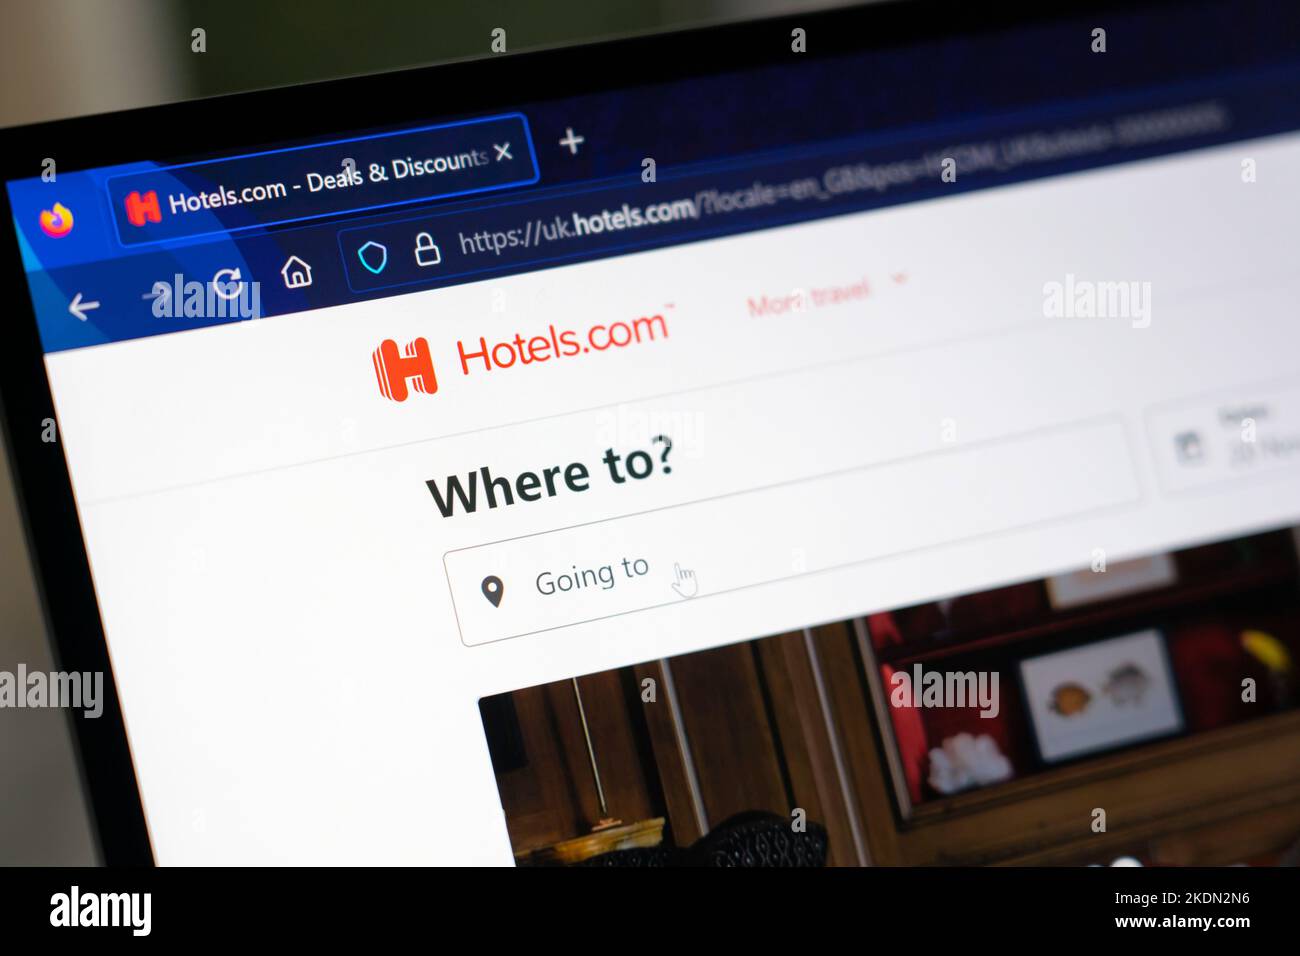 Hotels.com Website - ein weltweit führender Anbieter von Hotelunterkünften, der Buchungsservices über ein eigenes Netzwerk lokalisierter Websites anbietet Stockfoto